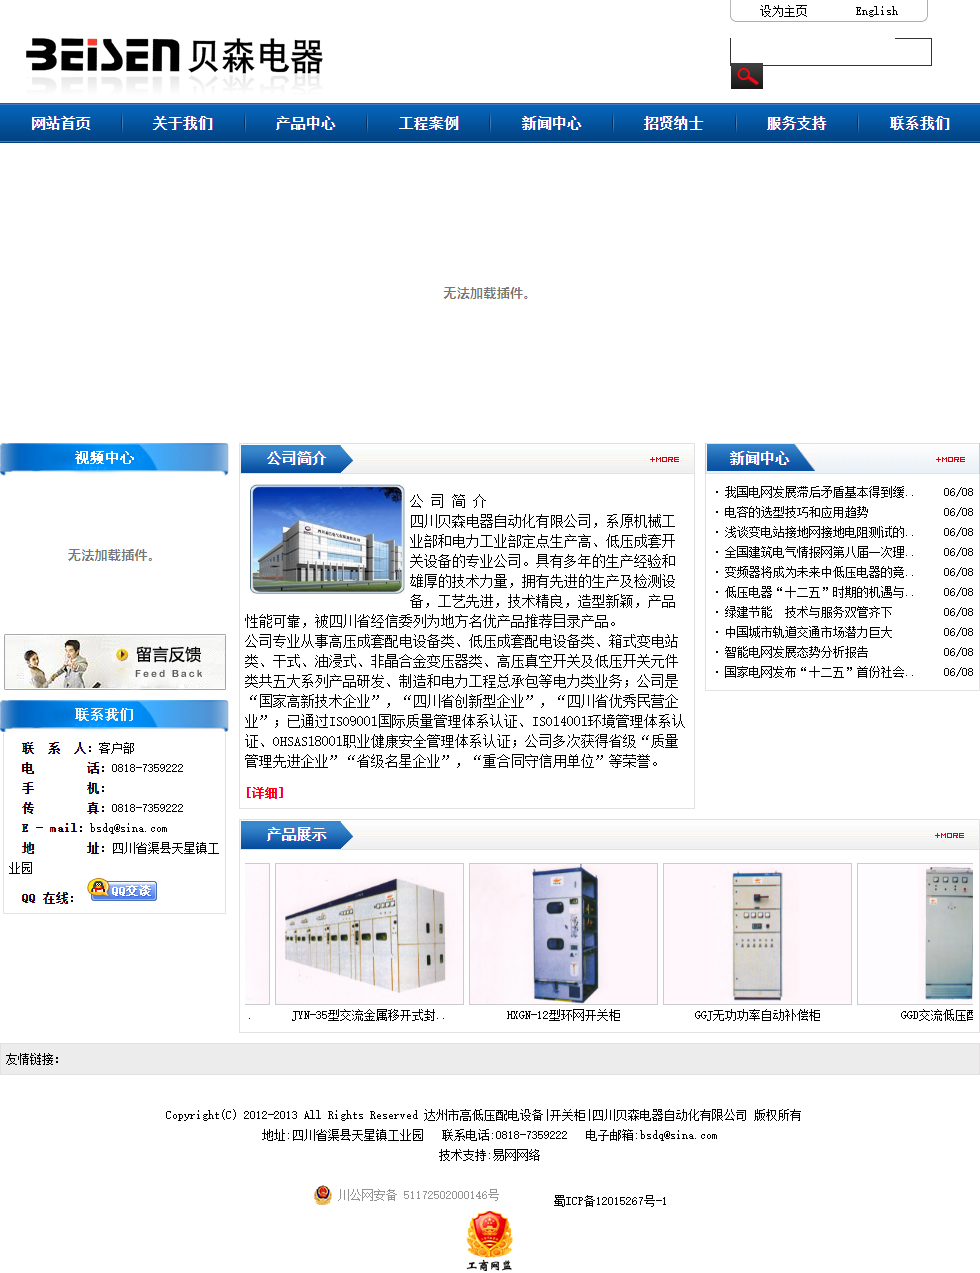 四川贝森电器自动化有限公司网站案例